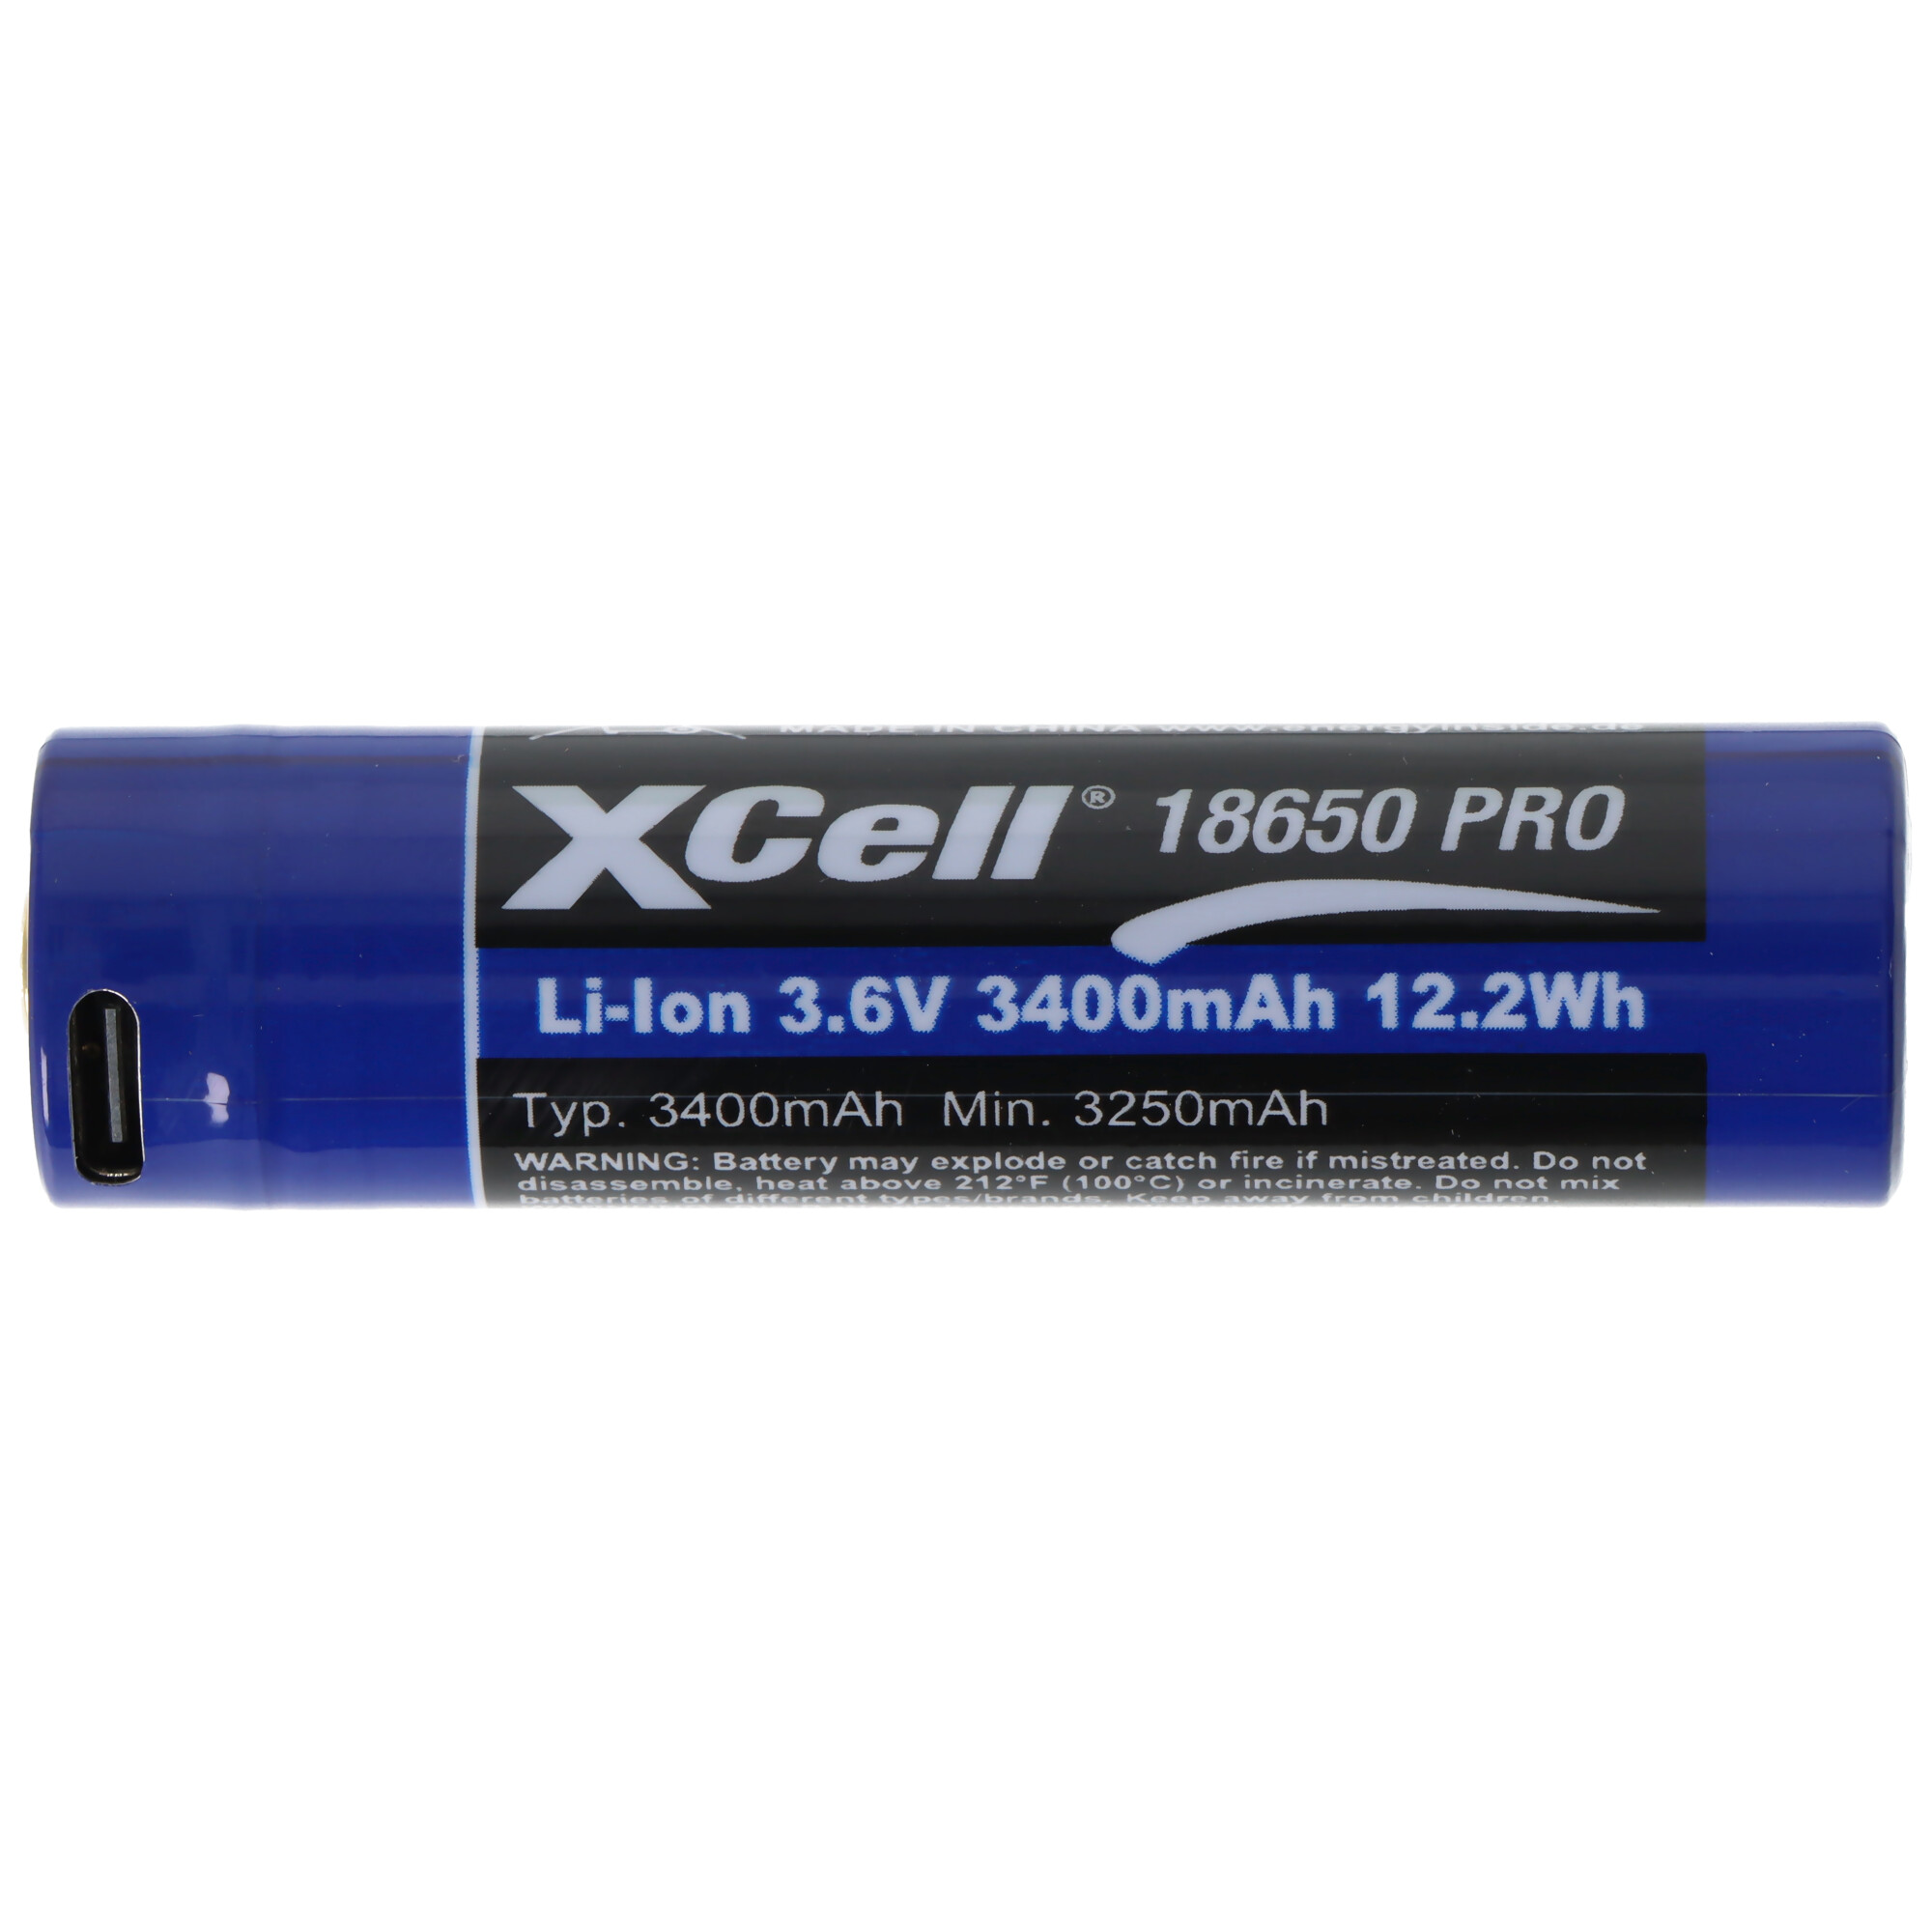 Pro 18650 Li-Ion Akku geschützter Li-Ion Akku, mit USB-C Ladebuchse, min. 3250mAh max. 3400mAh, 3,6 Volt, 71,1mm x 18,8mm